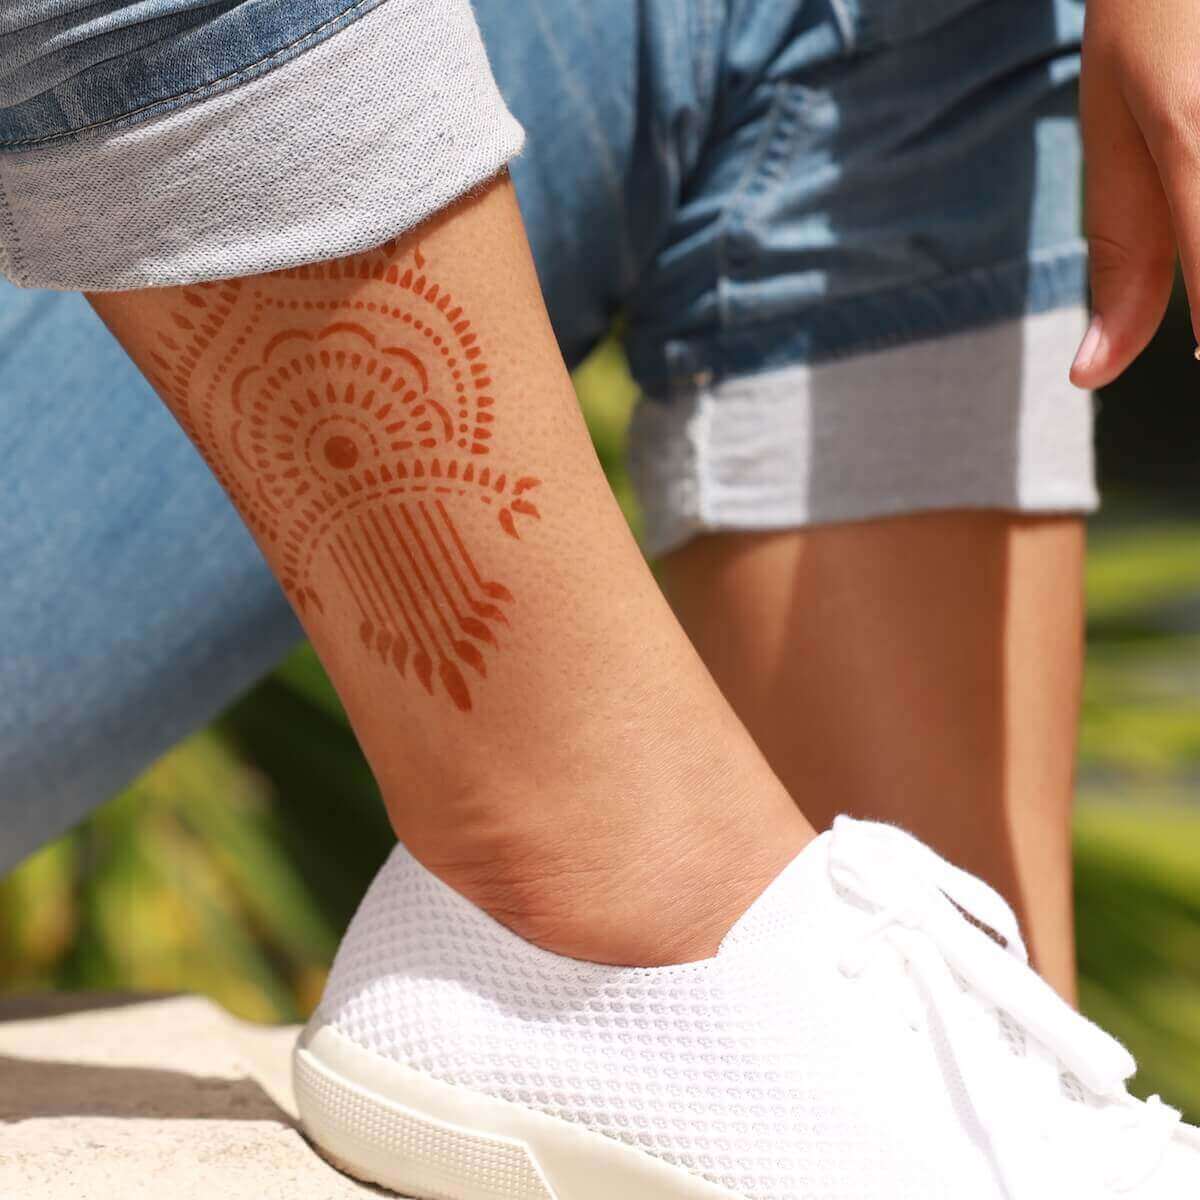 henna stencil#henna sticker  Henna tattoo stickers, Henna stencils, Henna  tattoo stencils